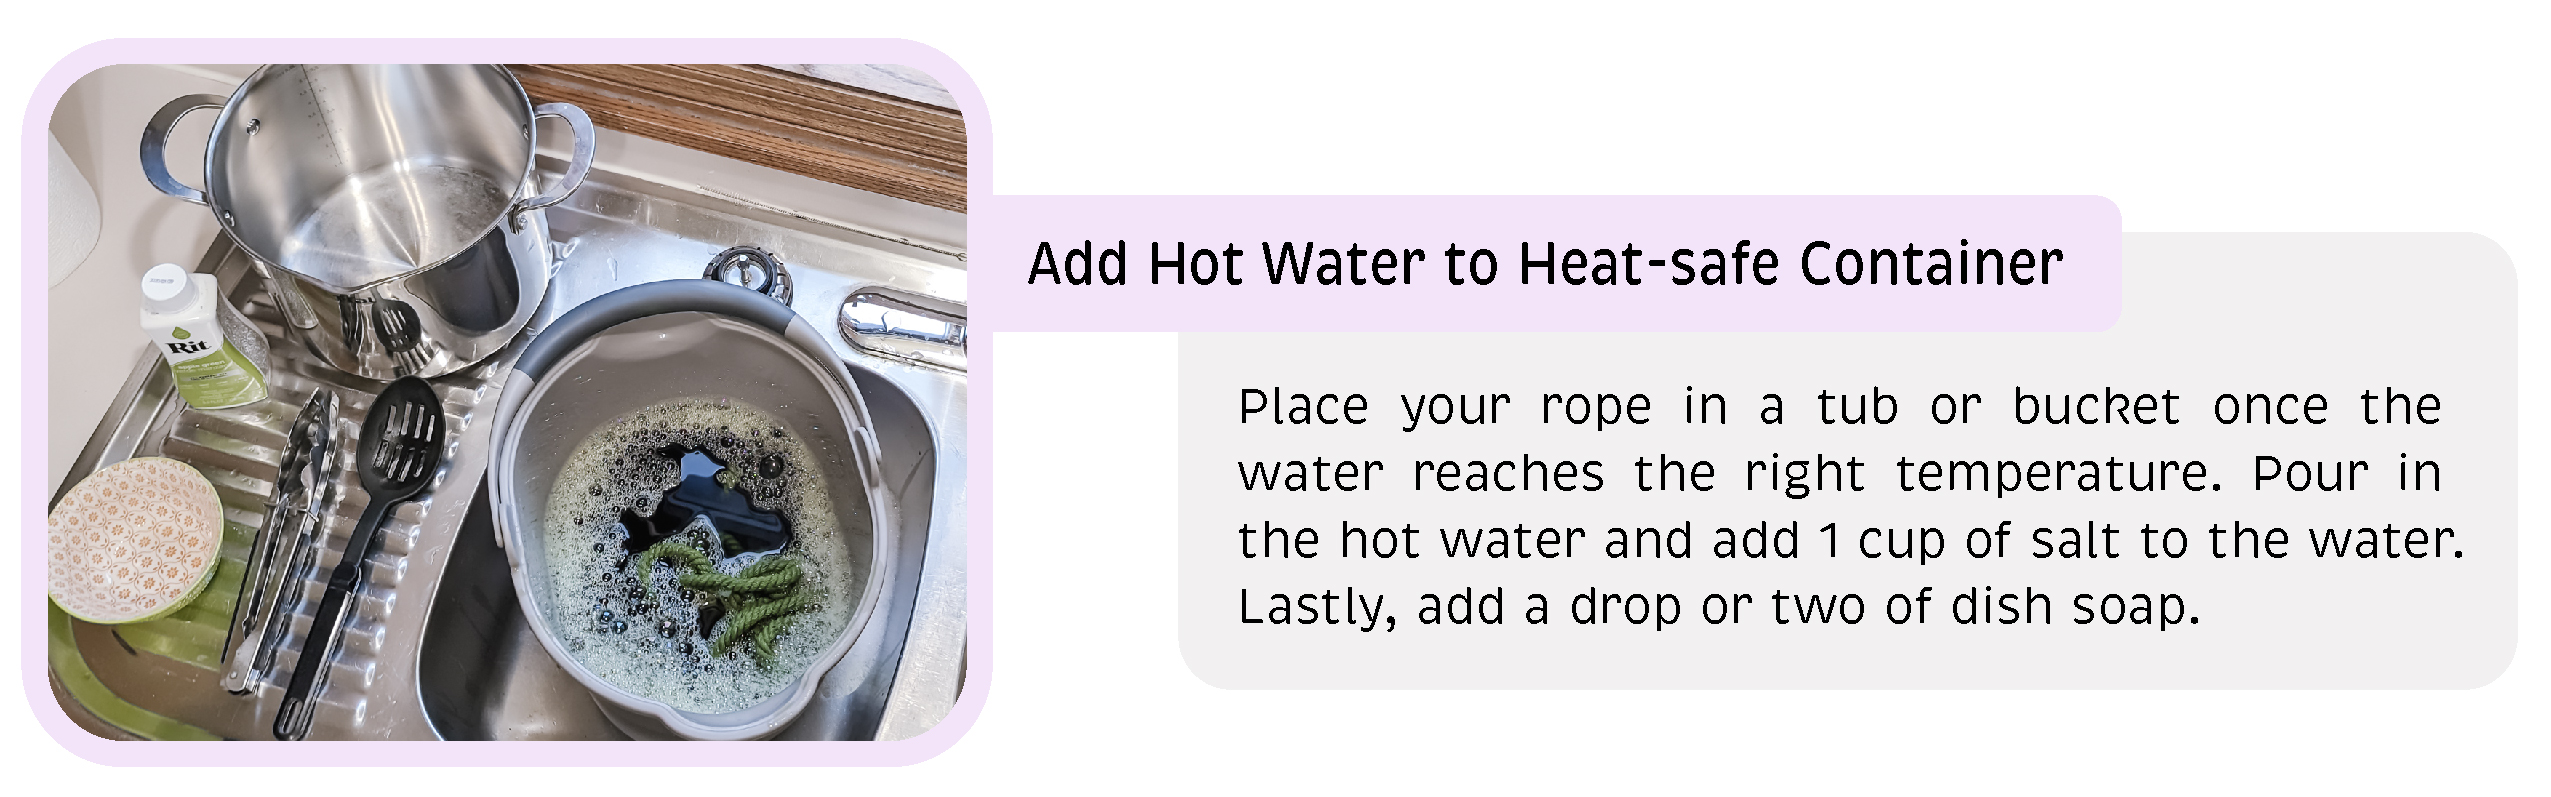 Add Hot Water